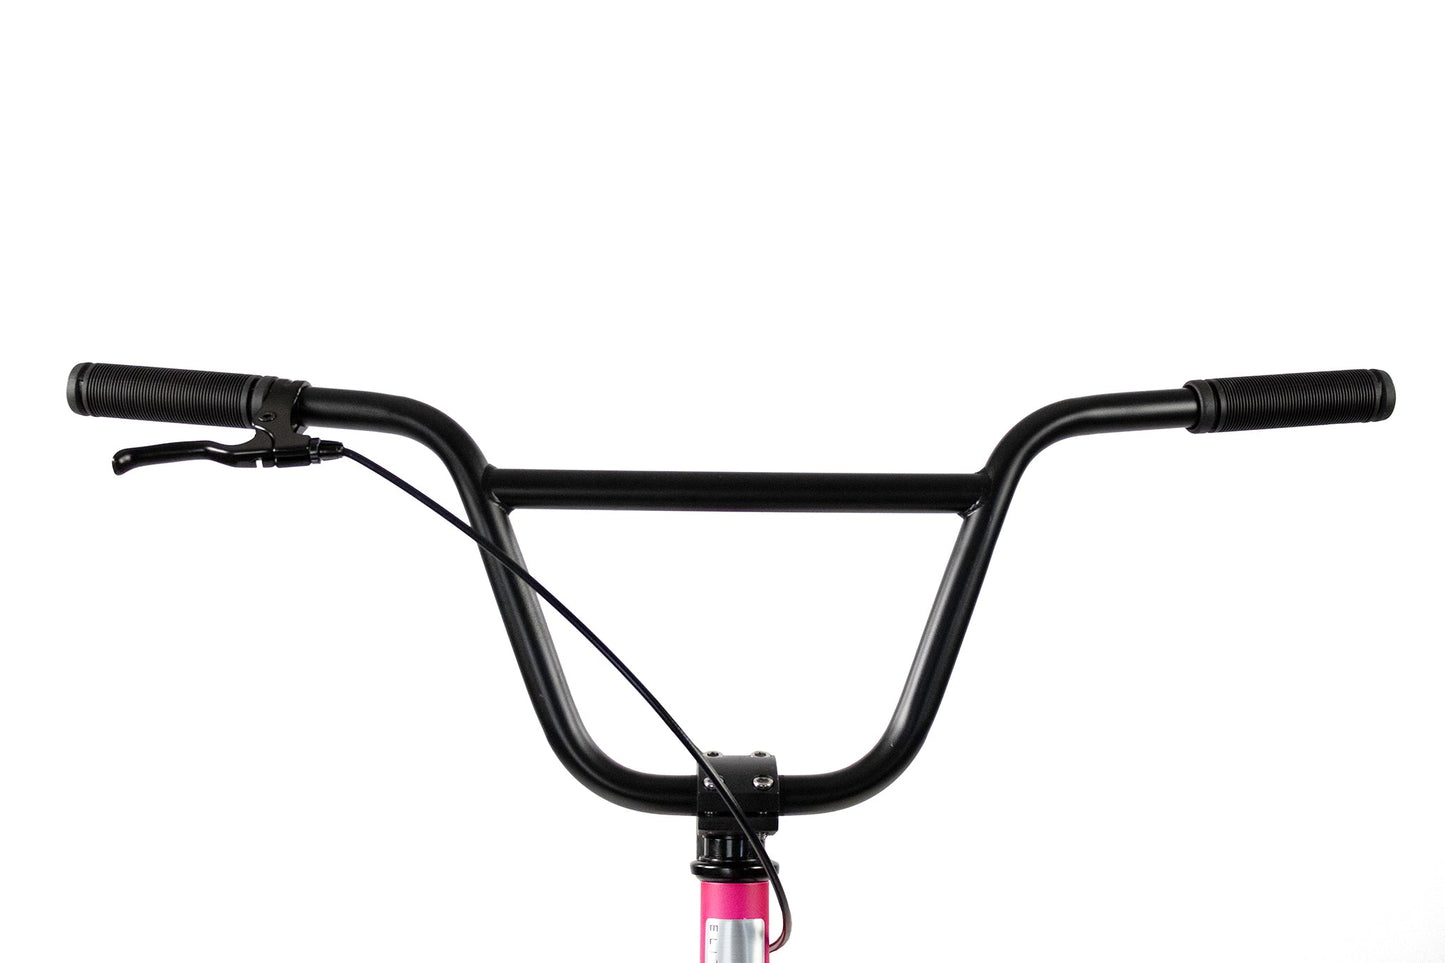 Elite Bmx Stealth Bike - Hottie Pink